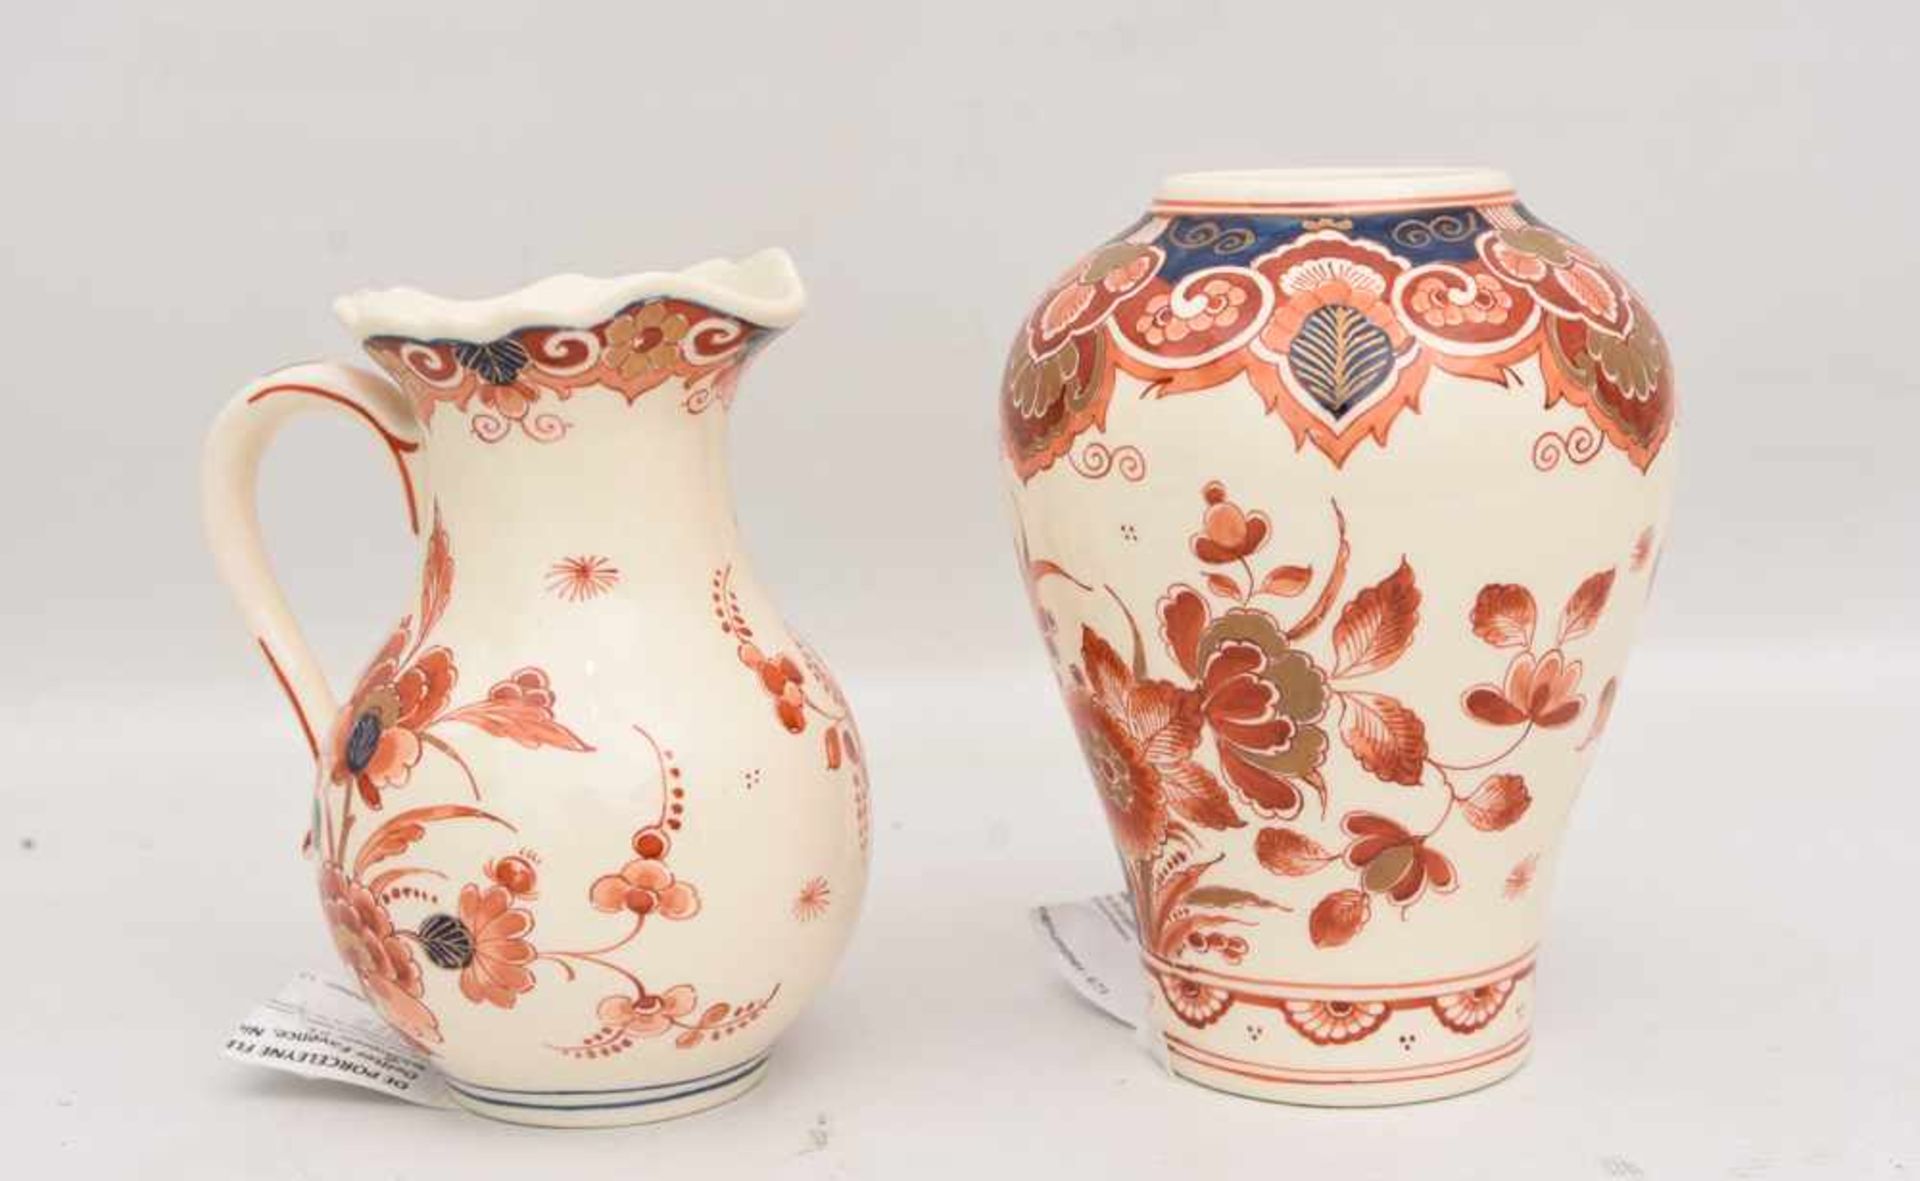 DE PORCELEYNE FLES, Krug und Vase in Delfter Fayence, Niederlande 20. Jh. Krug und Vase sind beide